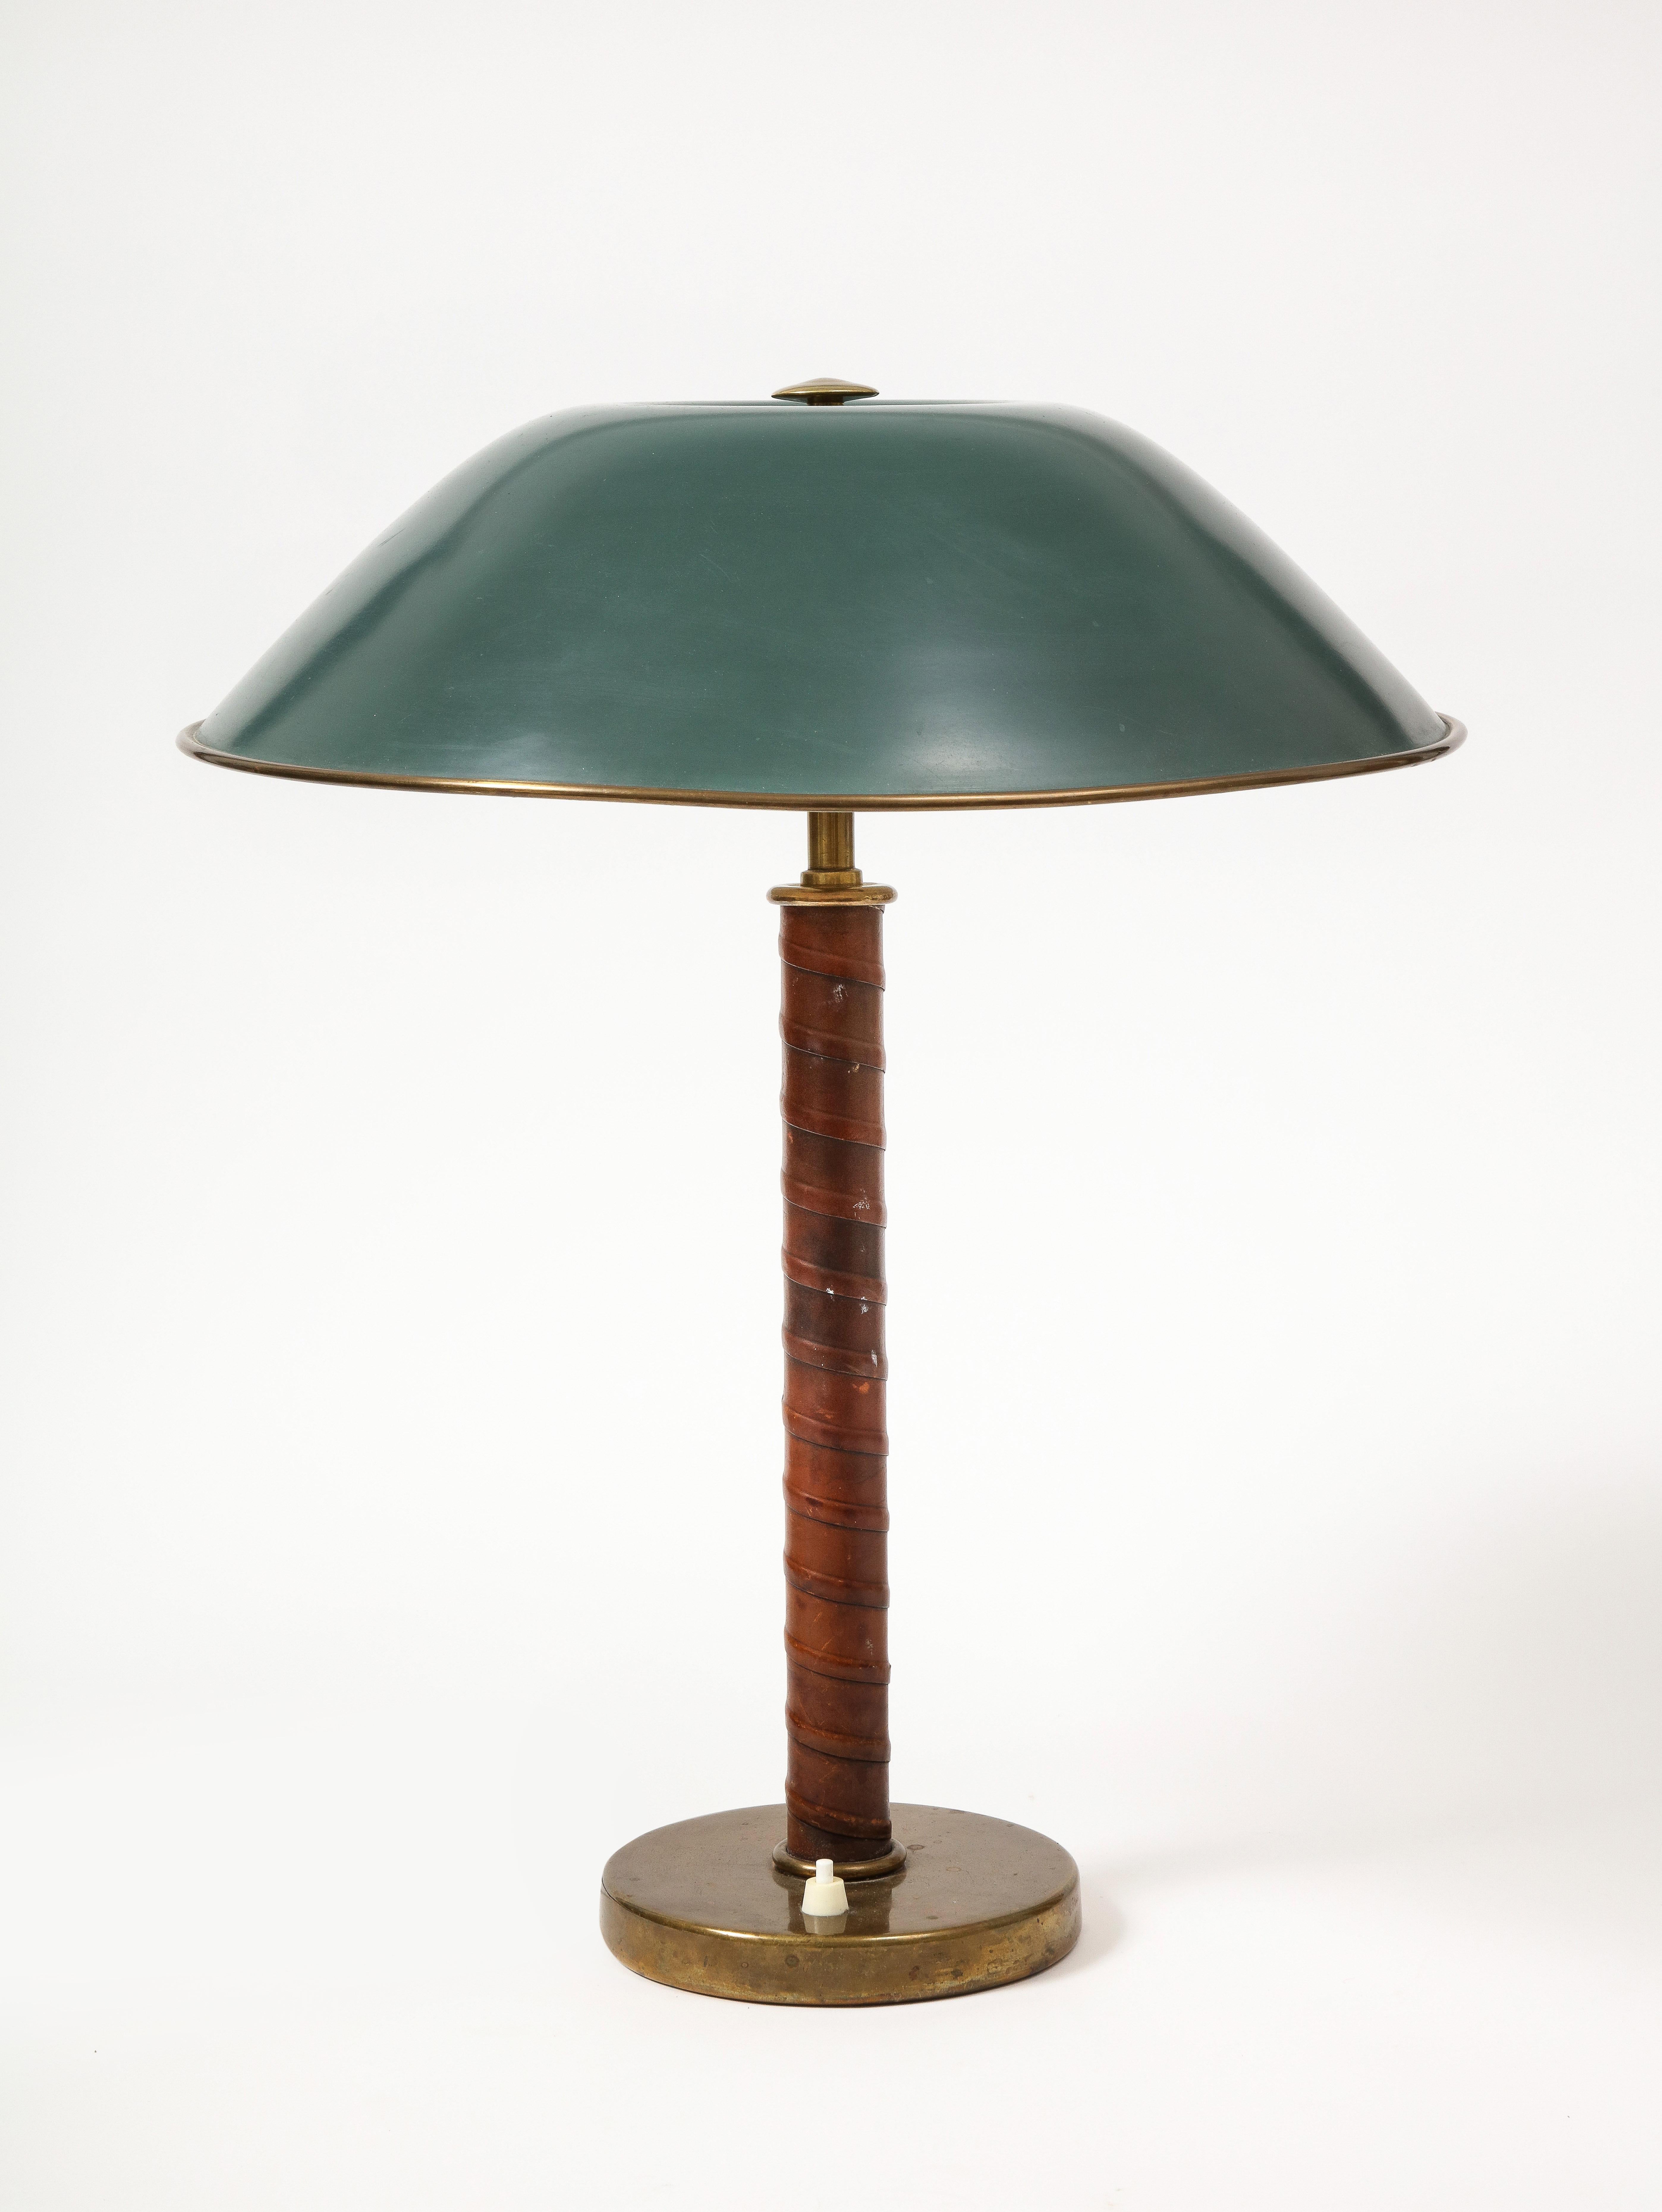 Lampe de table Grace suédoise en cuir raffiné, laiton et laiton laqué, fabriquée par Bohlmarks. Cette lampe présente un corps en cuir enveloppé et un grand abat-jour vert magnifiquement patiné.